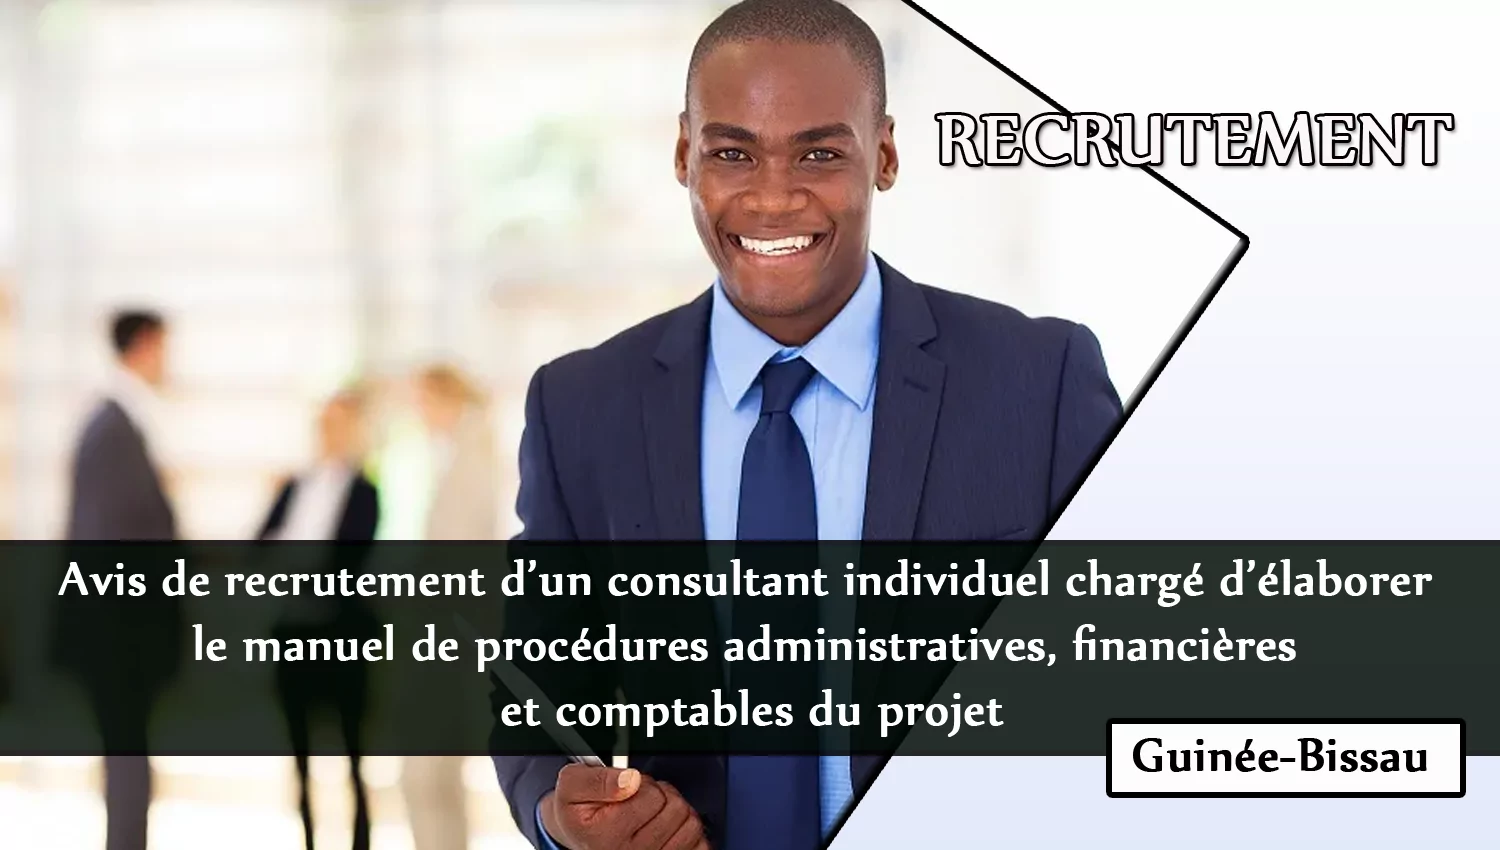 Avis de recrutement d’un consultant individuel chargé d’élaborer le manuel de procédures administratives, financières et comptables du projet, Guinée-Bissau